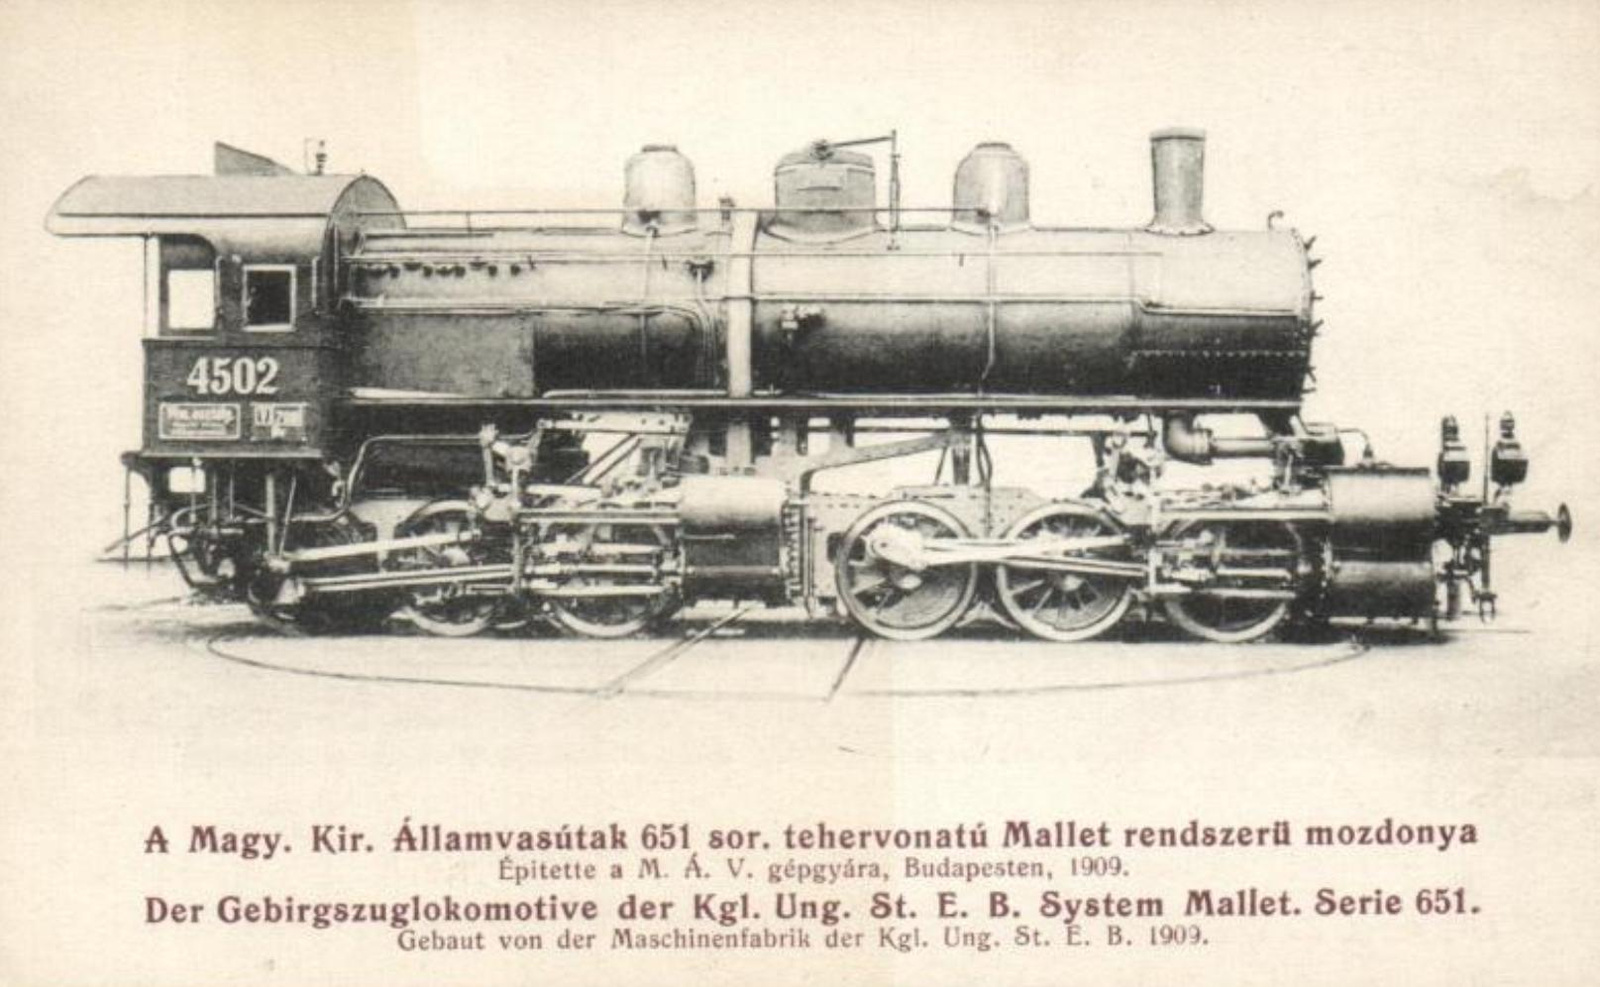 651.002 (MÁV VI.m 4502, MÁVAG 1909)